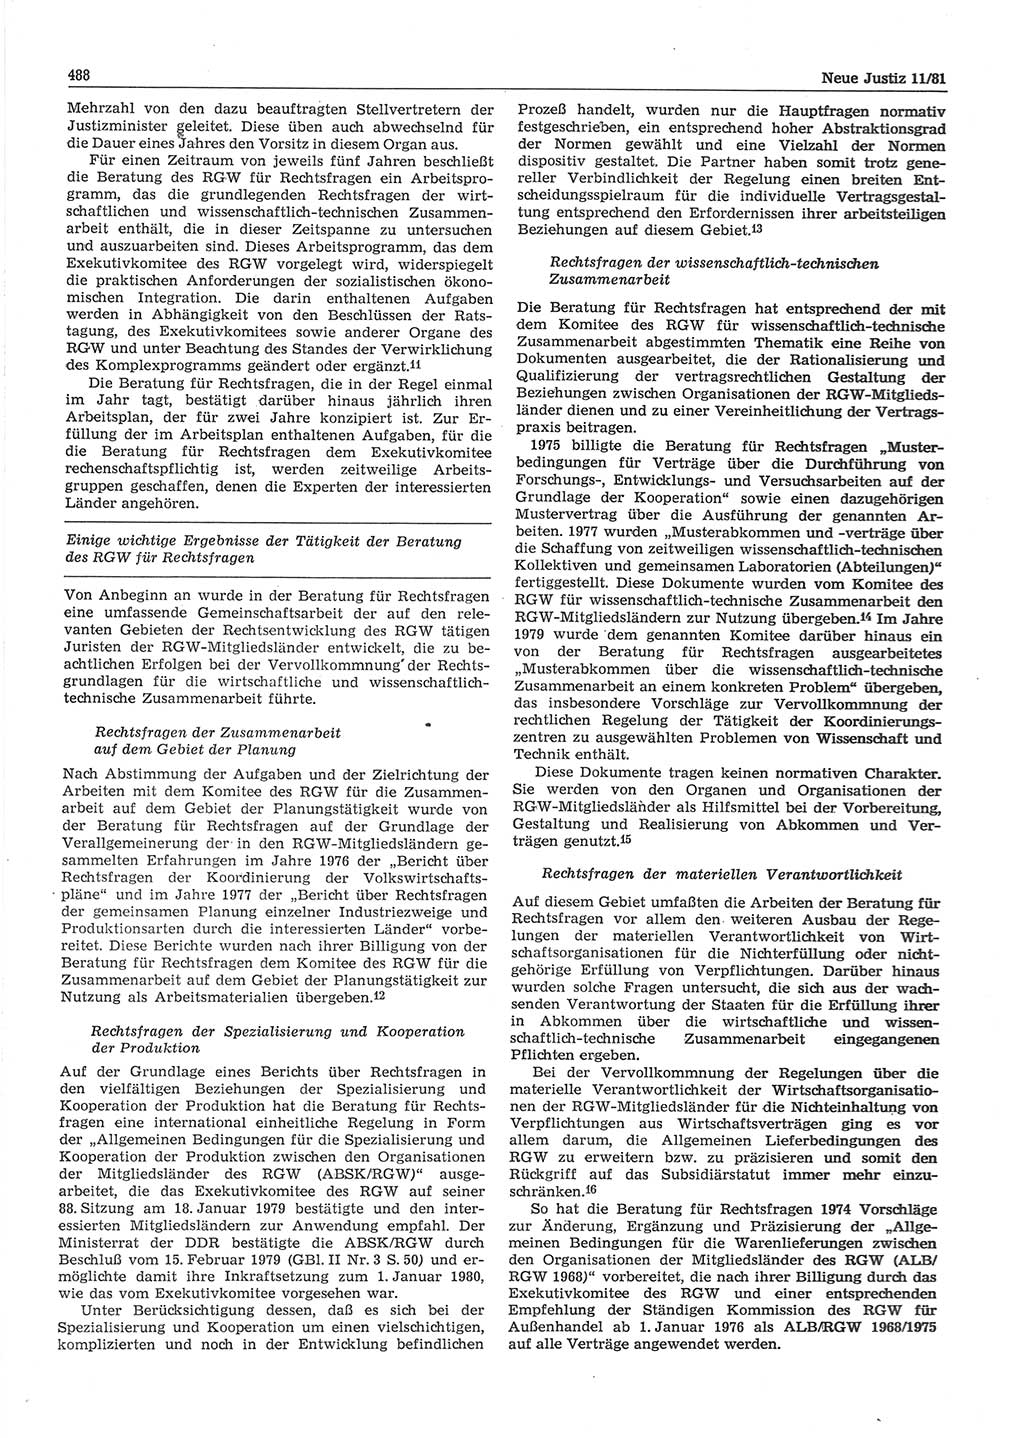 Neue Justiz (NJ), Zeitschrift für sozialistisches Recht und Gesetzlichkeit [Deutsche Demokratische Republik (DDR)], 35. Jahrgang 1981, Seite 488 (NJ DDR 1981, S. 488)